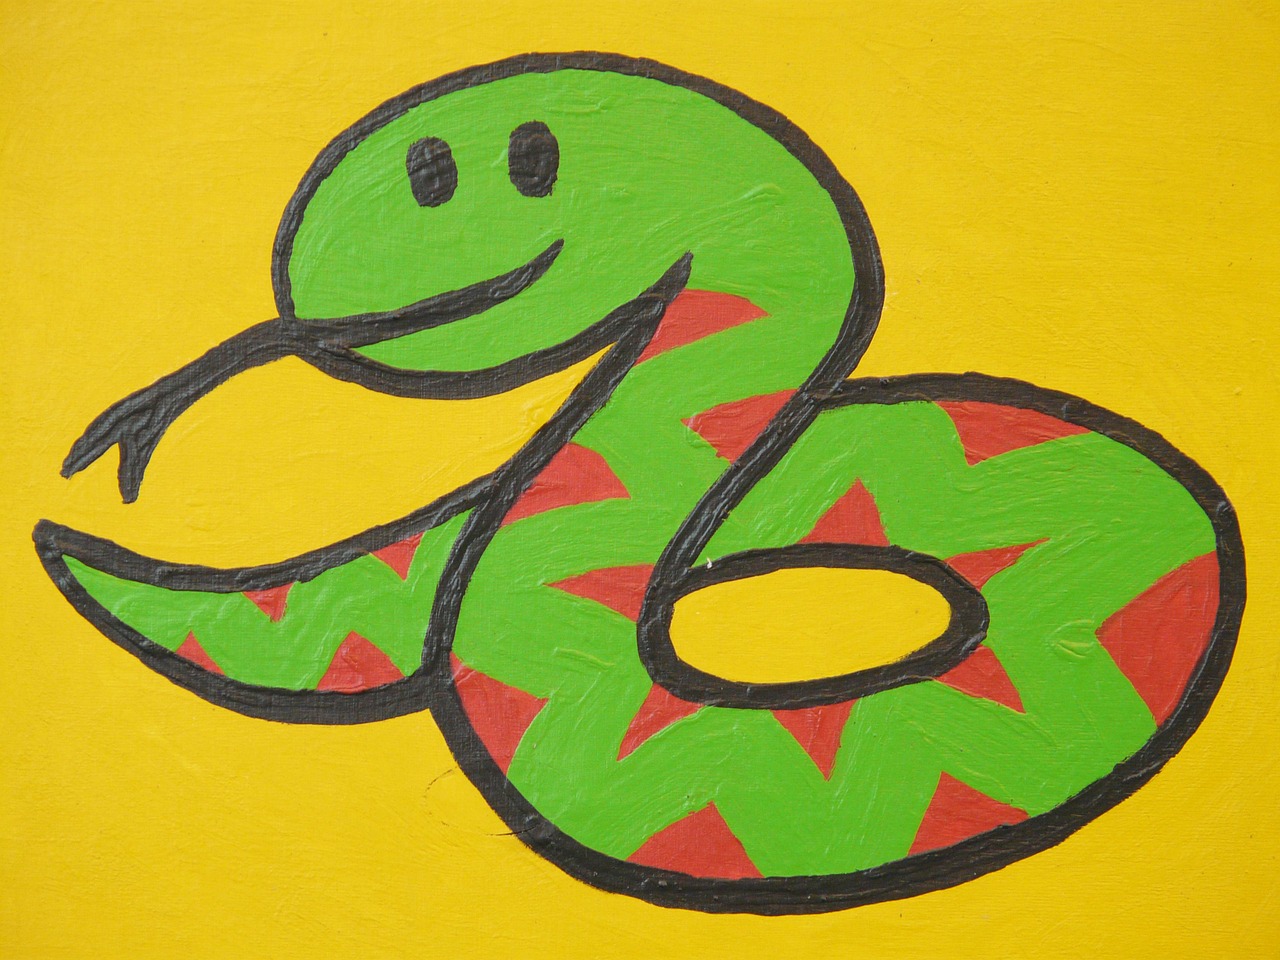 snake cartoon character drawing free photo